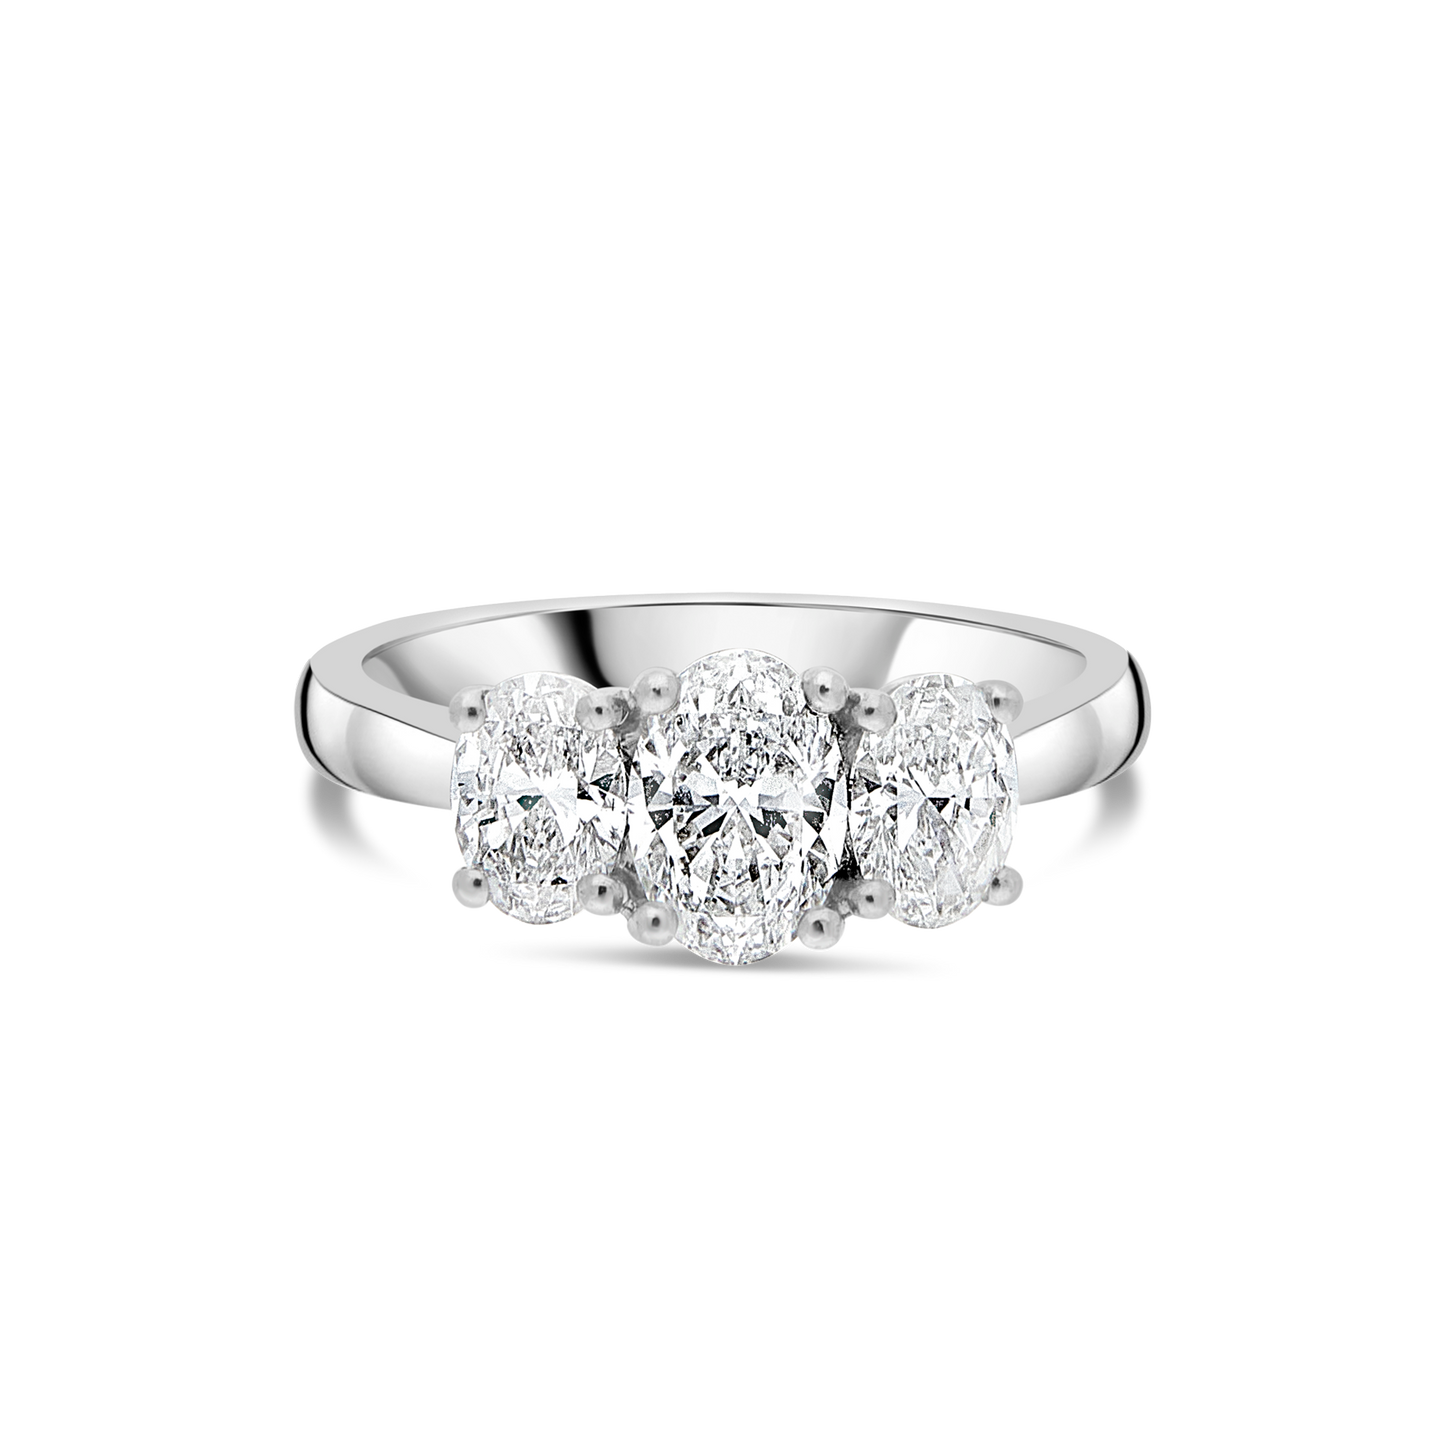 Platinum "Exquisite" Three Stone Oval Diamond Ring